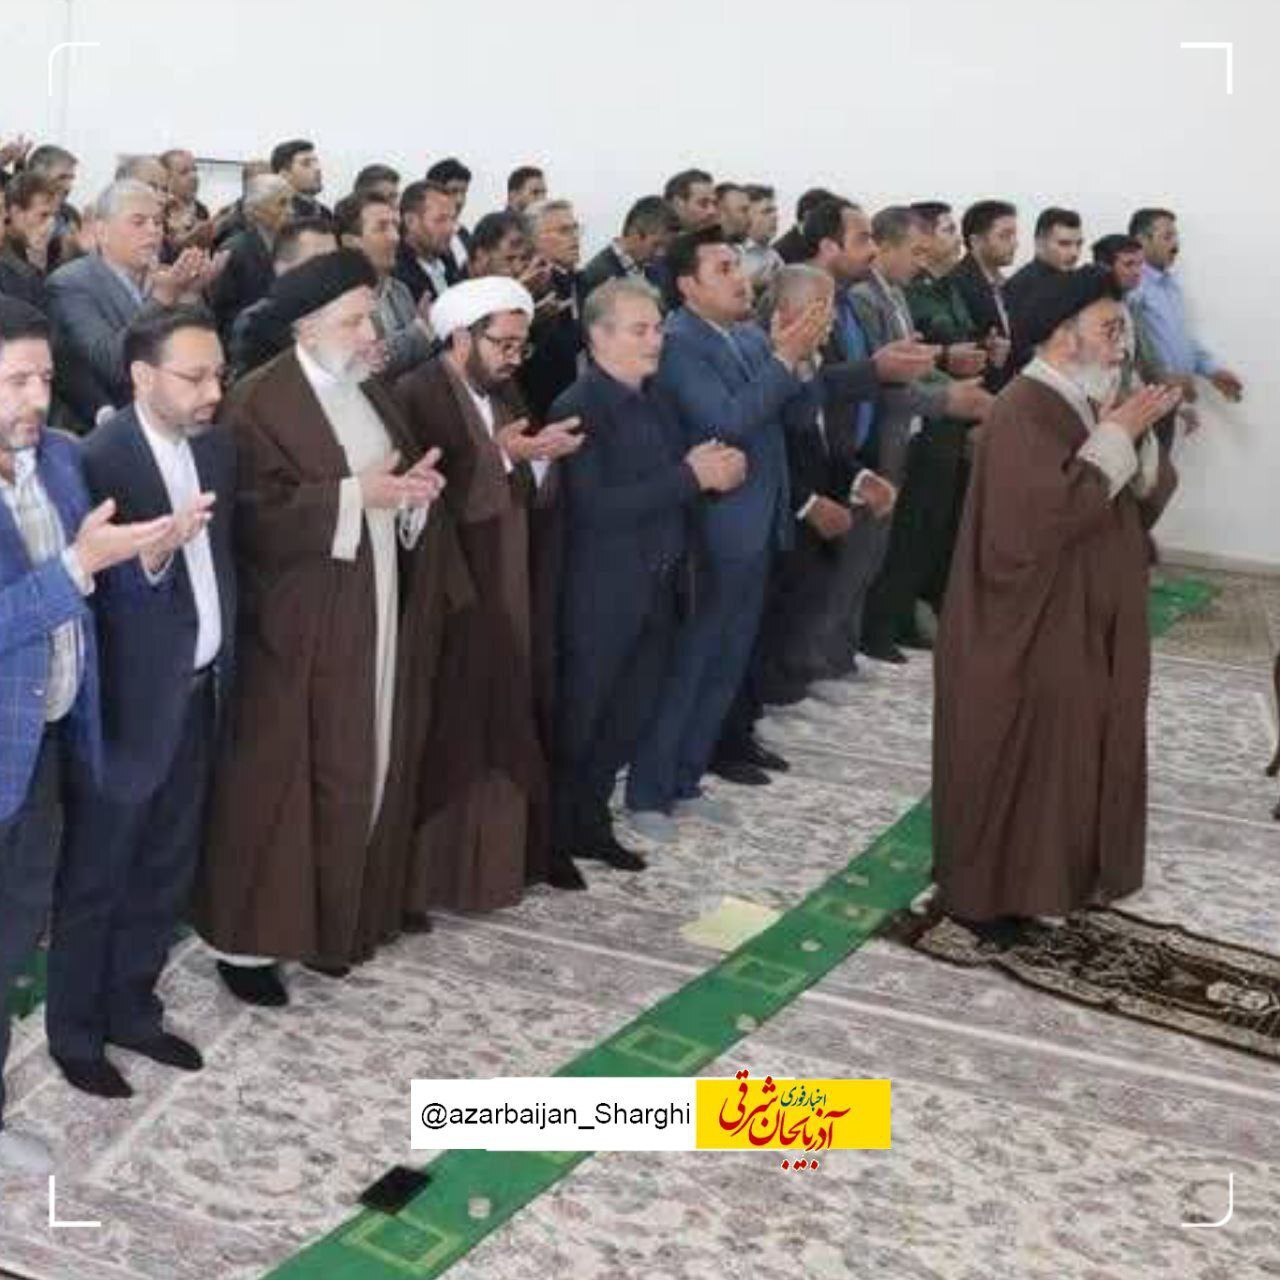 تصویر باورنکردنی آخرین نماز رئیسی و آل هاشم پیش از سقوط بالگرد ؛ کدام یک امام جماعت بودند؟